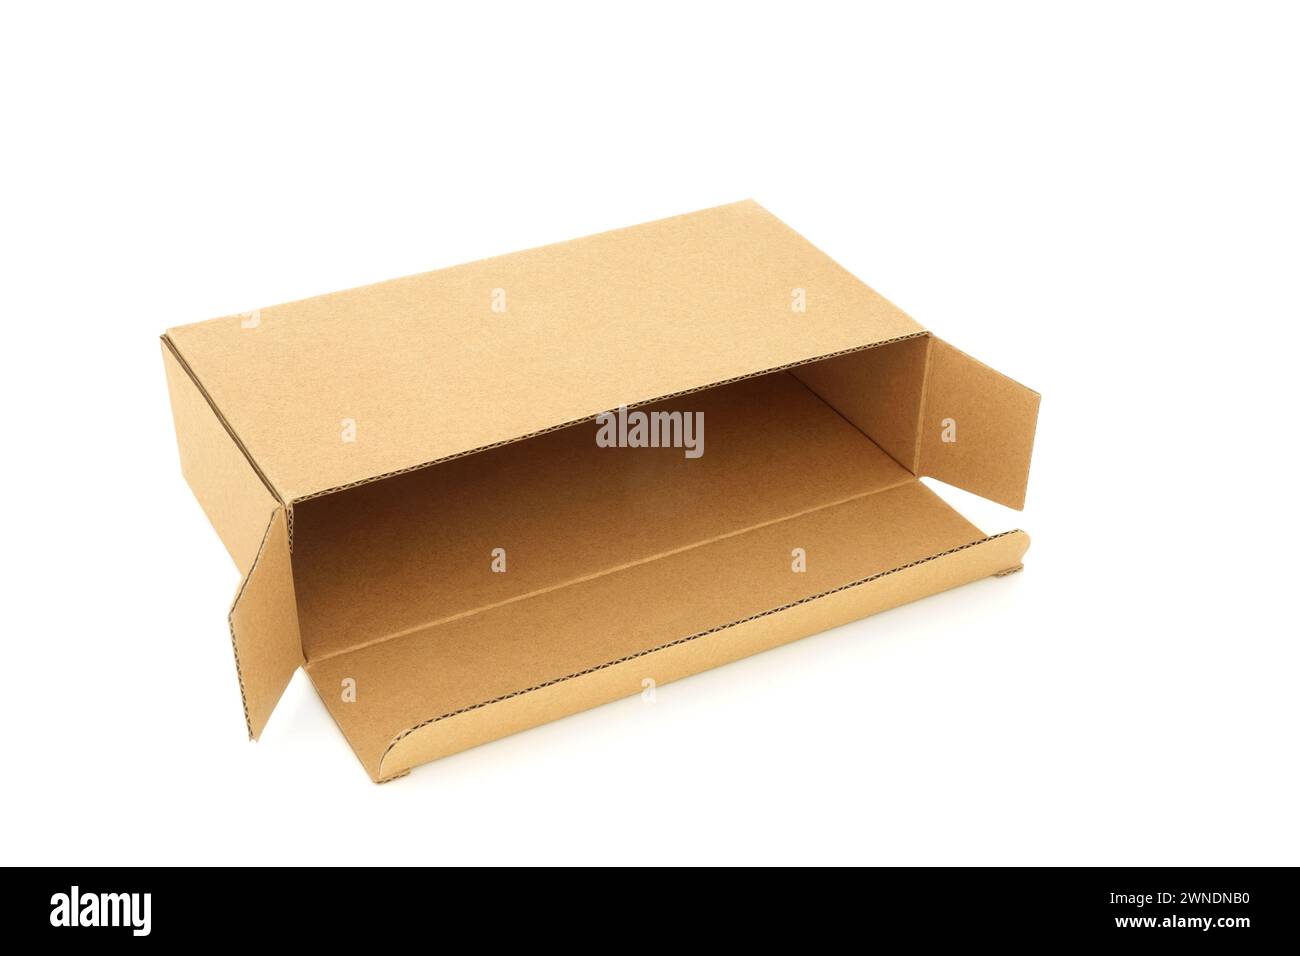 Slimline braune Karton mit rechteckiger Form auf weißem Hintergrund. Umweltfreundliches wiederverwendbares Material für die Lieferung von Paketen. Stockfoto